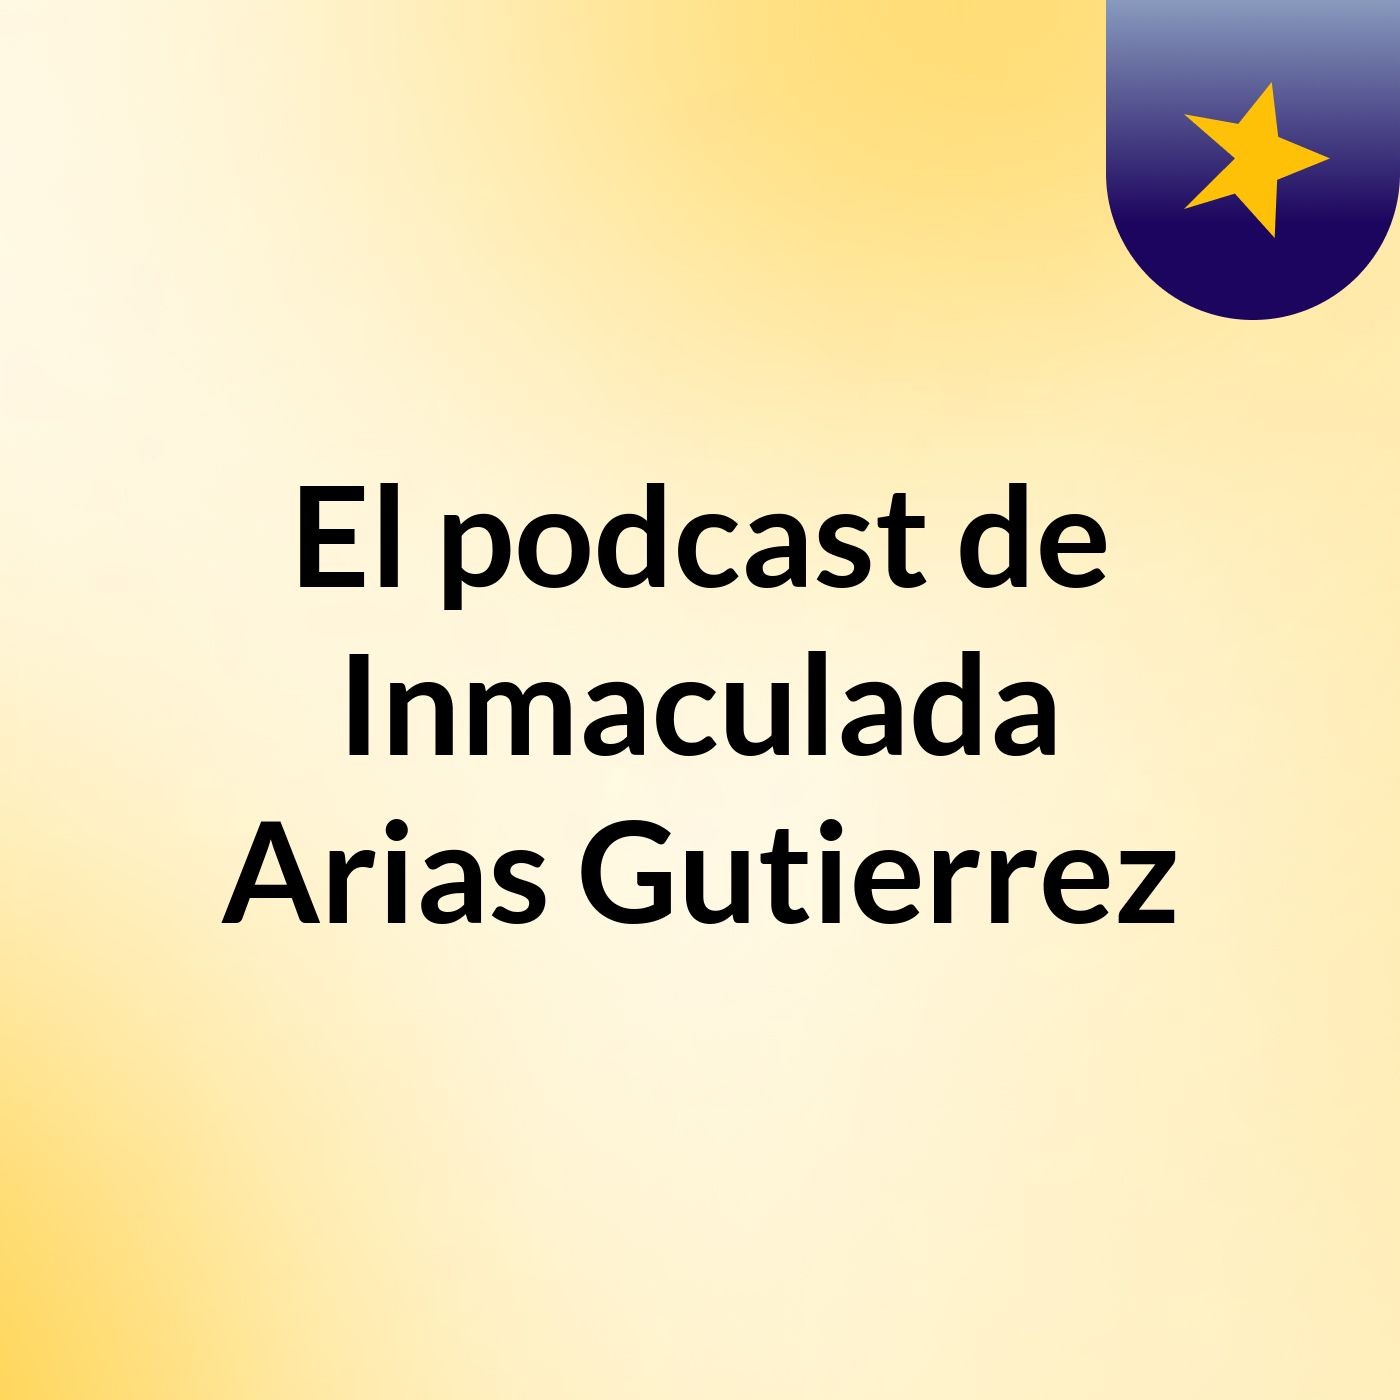 El podcast de Inmaculada Arias Gutierrez